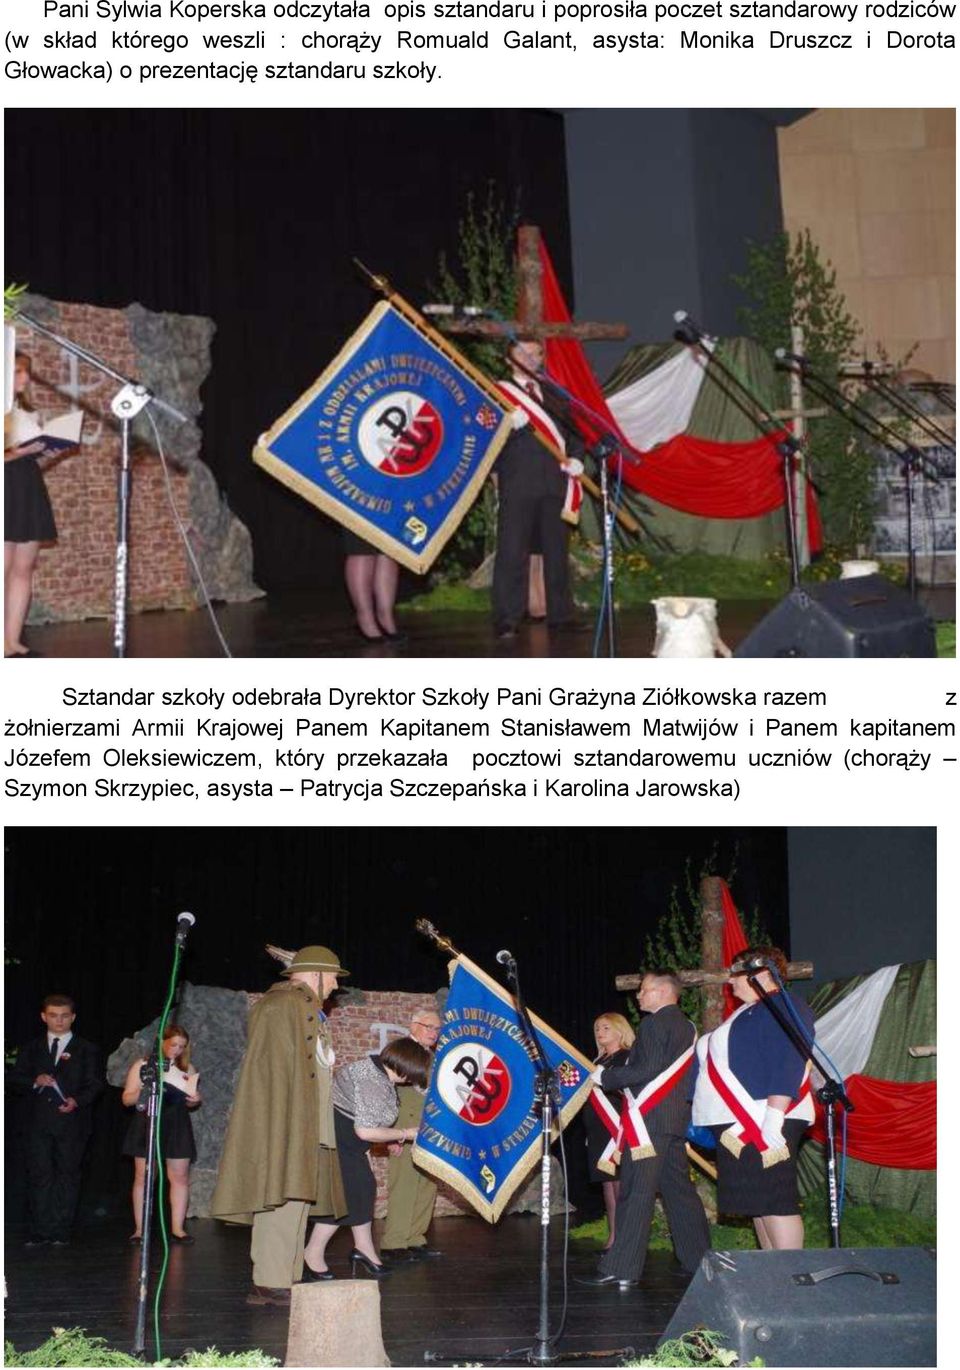 Sztandar szkoły odebrała Dyrektor Szkoły Pani Grażyna Ziółkowska razem z żołnierzami Armii Krajowej Panem Kapitanem Stanisławem